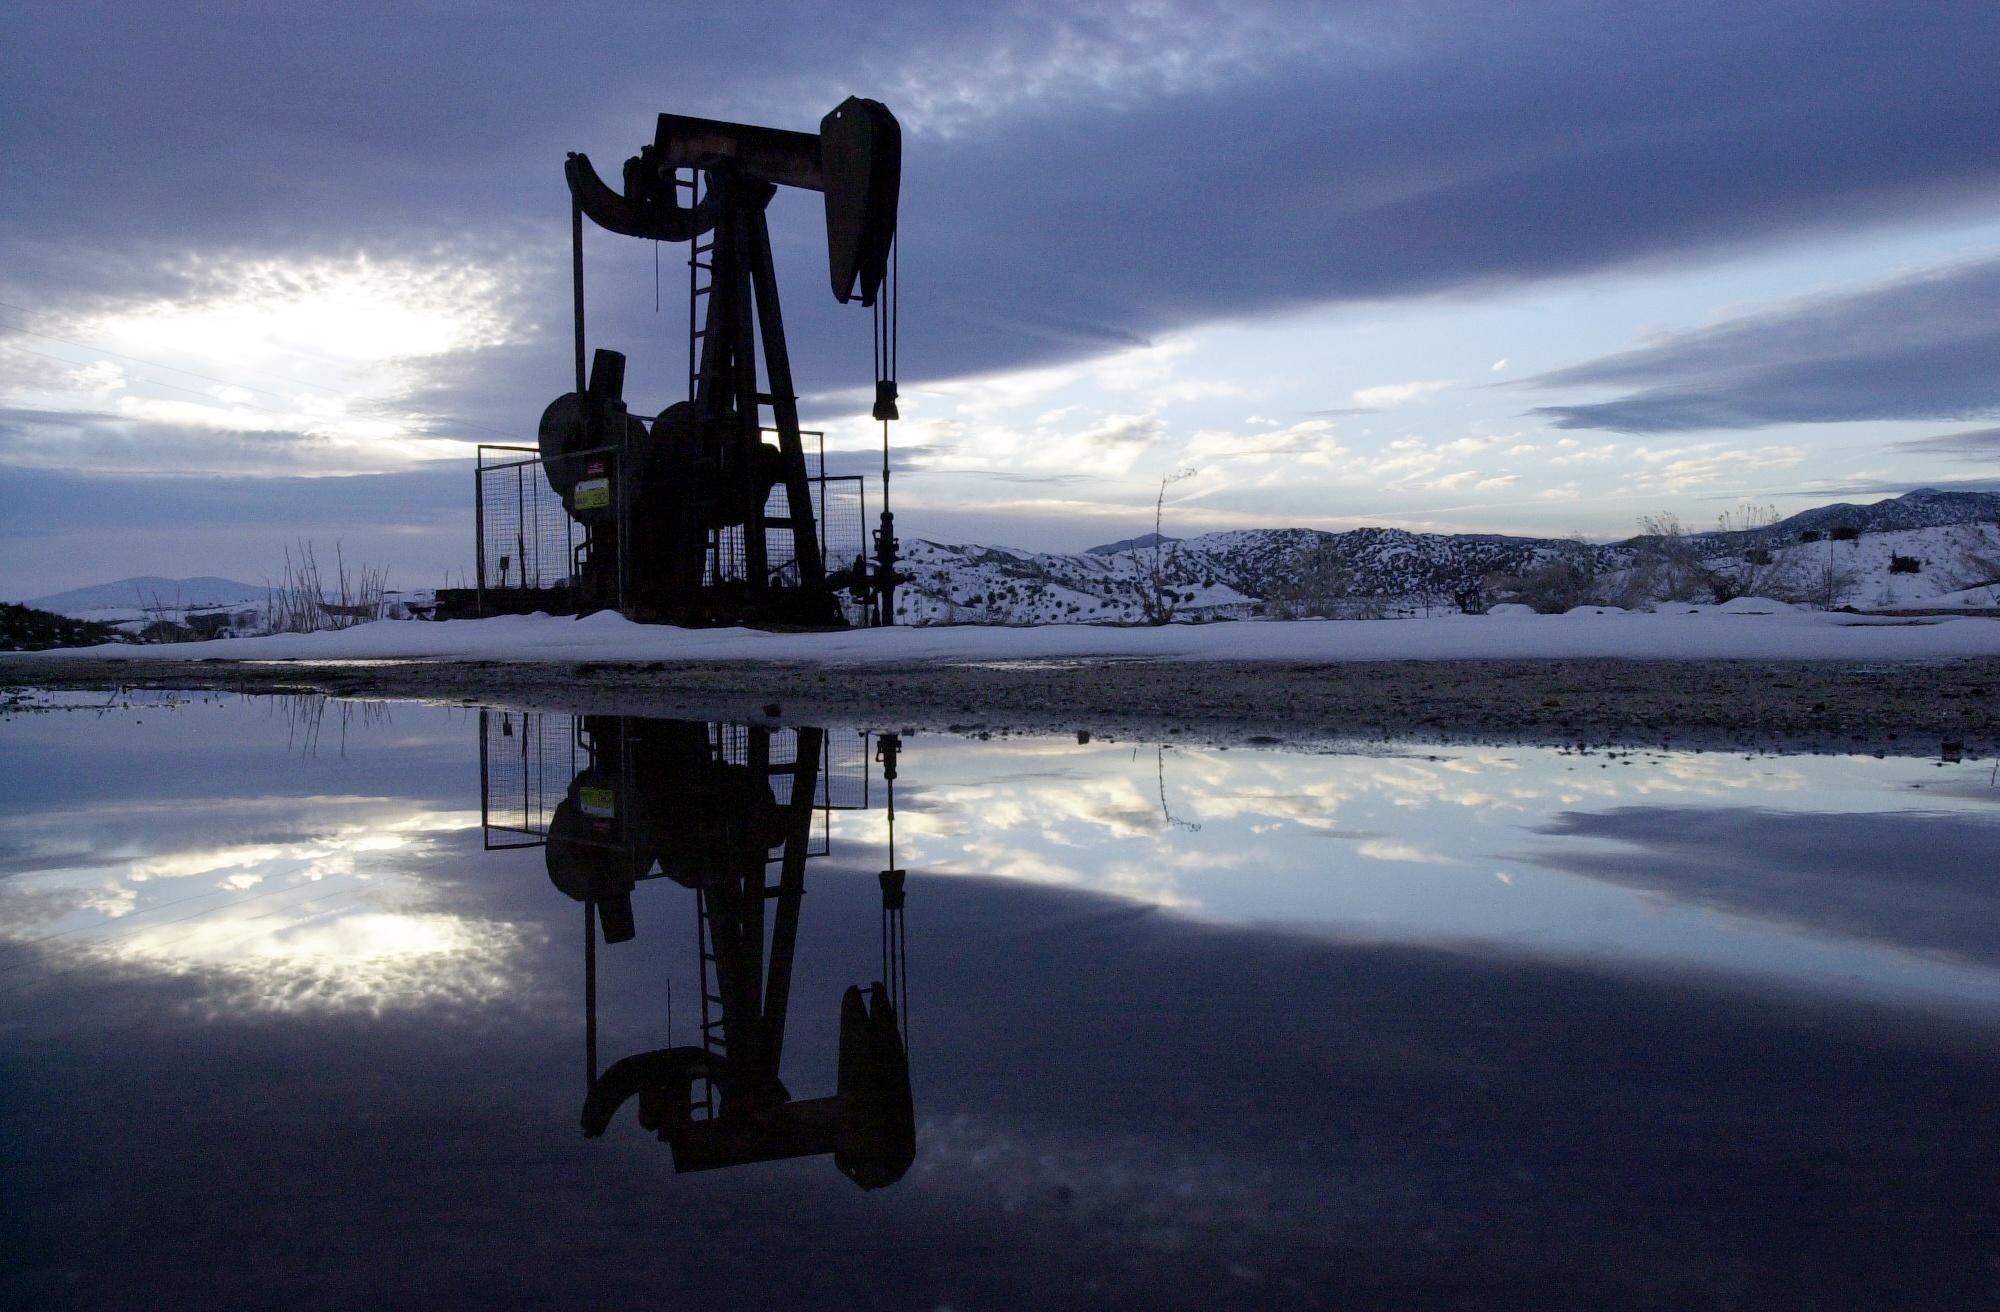 Палата представителей США поддержала запрет на импорт российской нефти